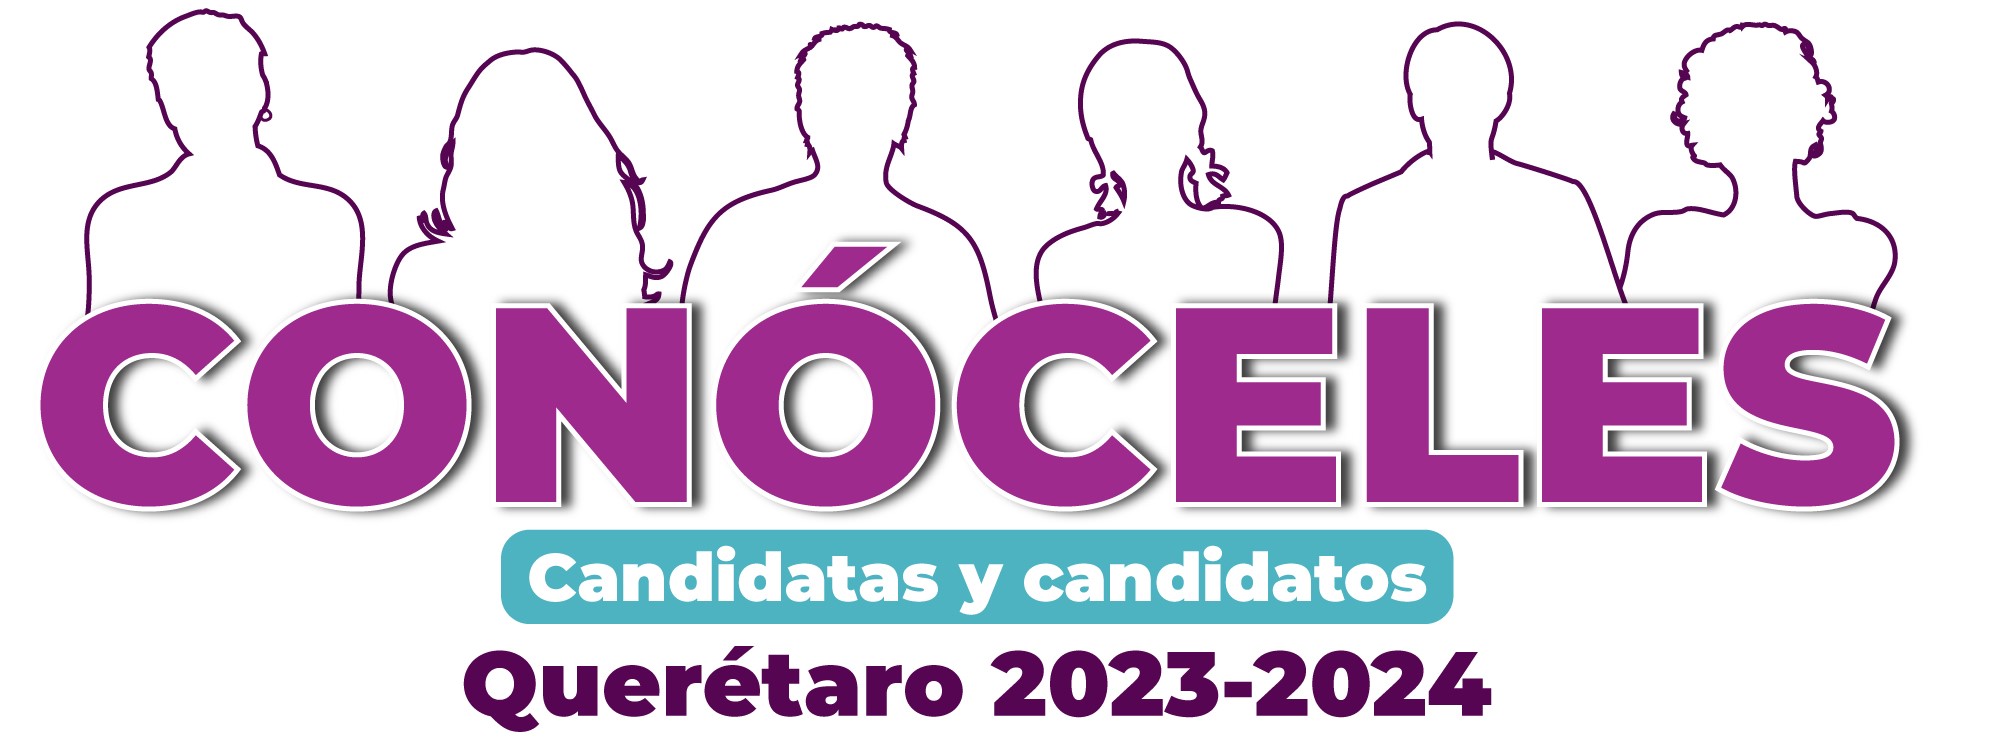 Logo Candidatas y Candidatos, Conóceles